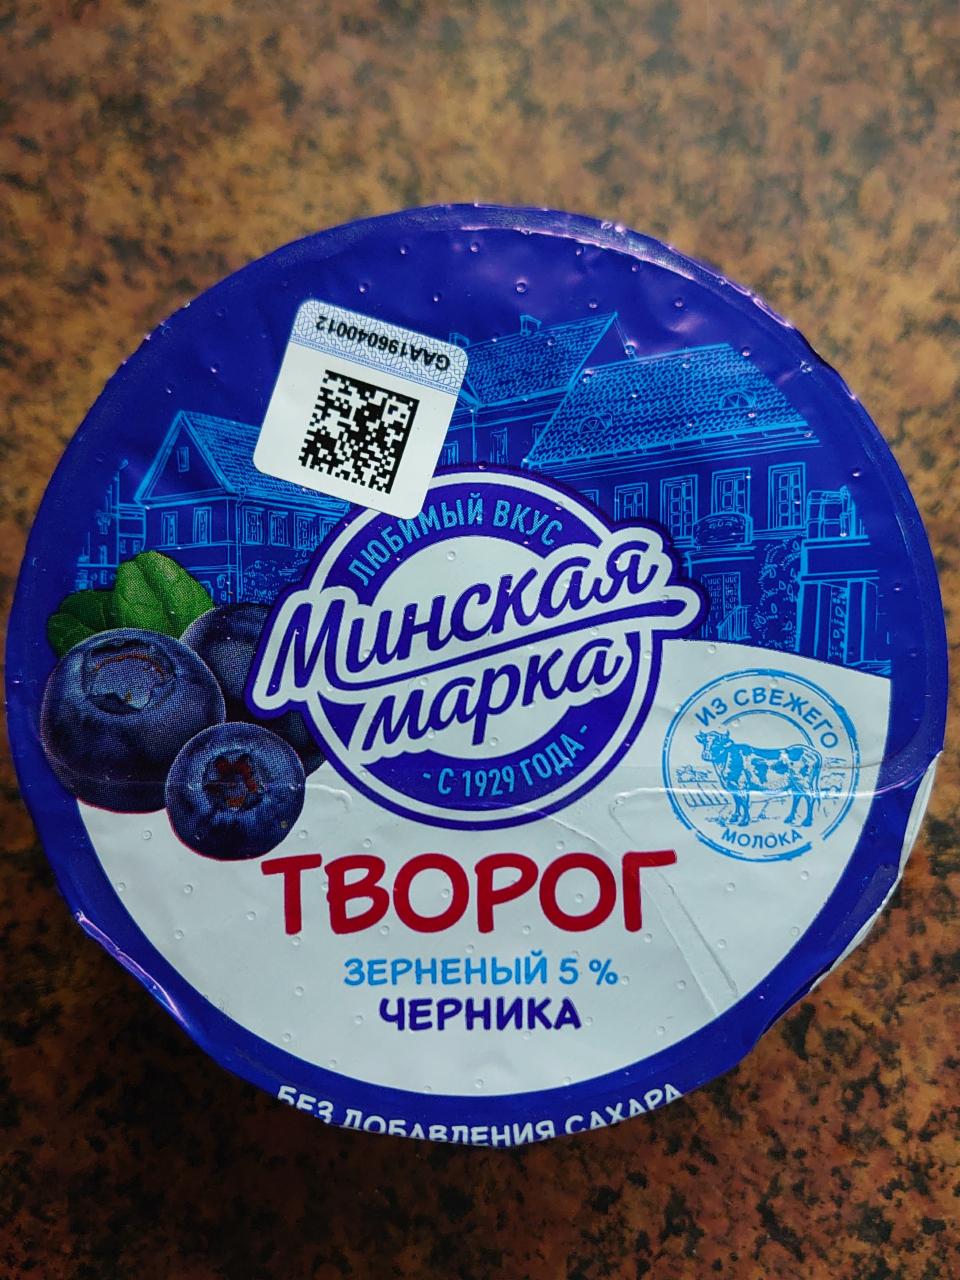 Фото - Творог зерненый 5% черника Минская марка